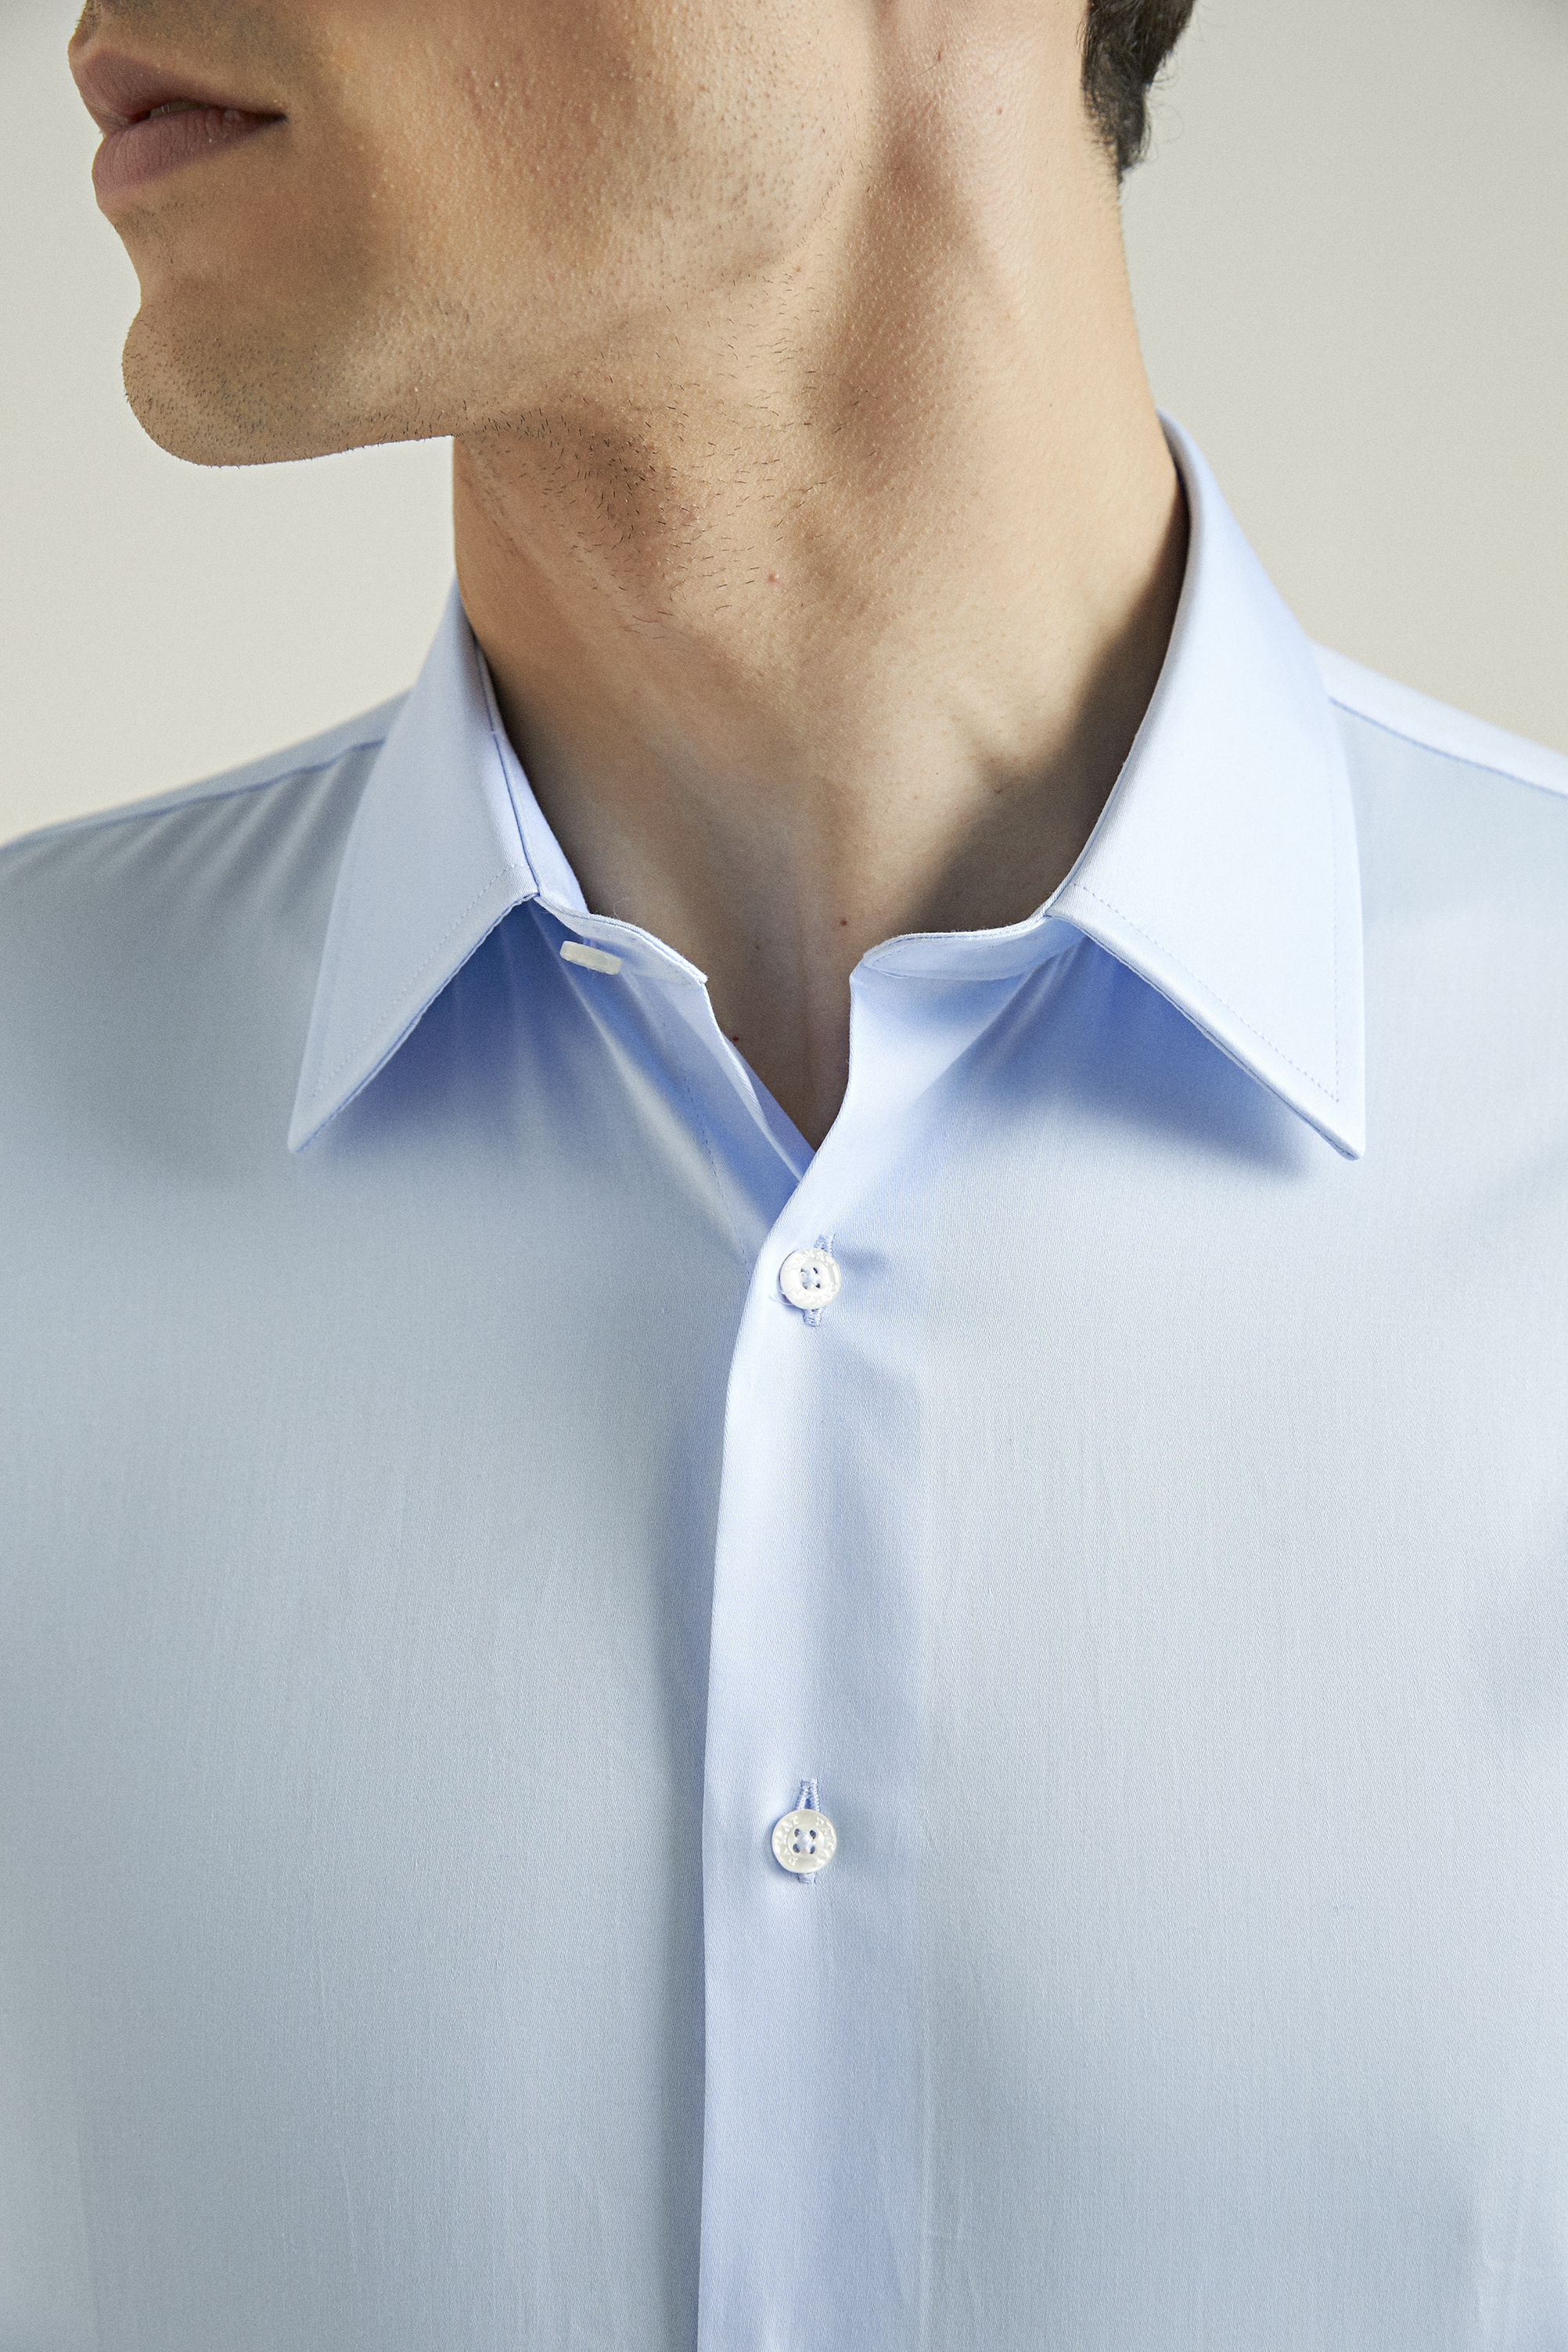 Damat Tween Damat Slim Fit Açık Mavi %100 Pamuk Gömlek. 3